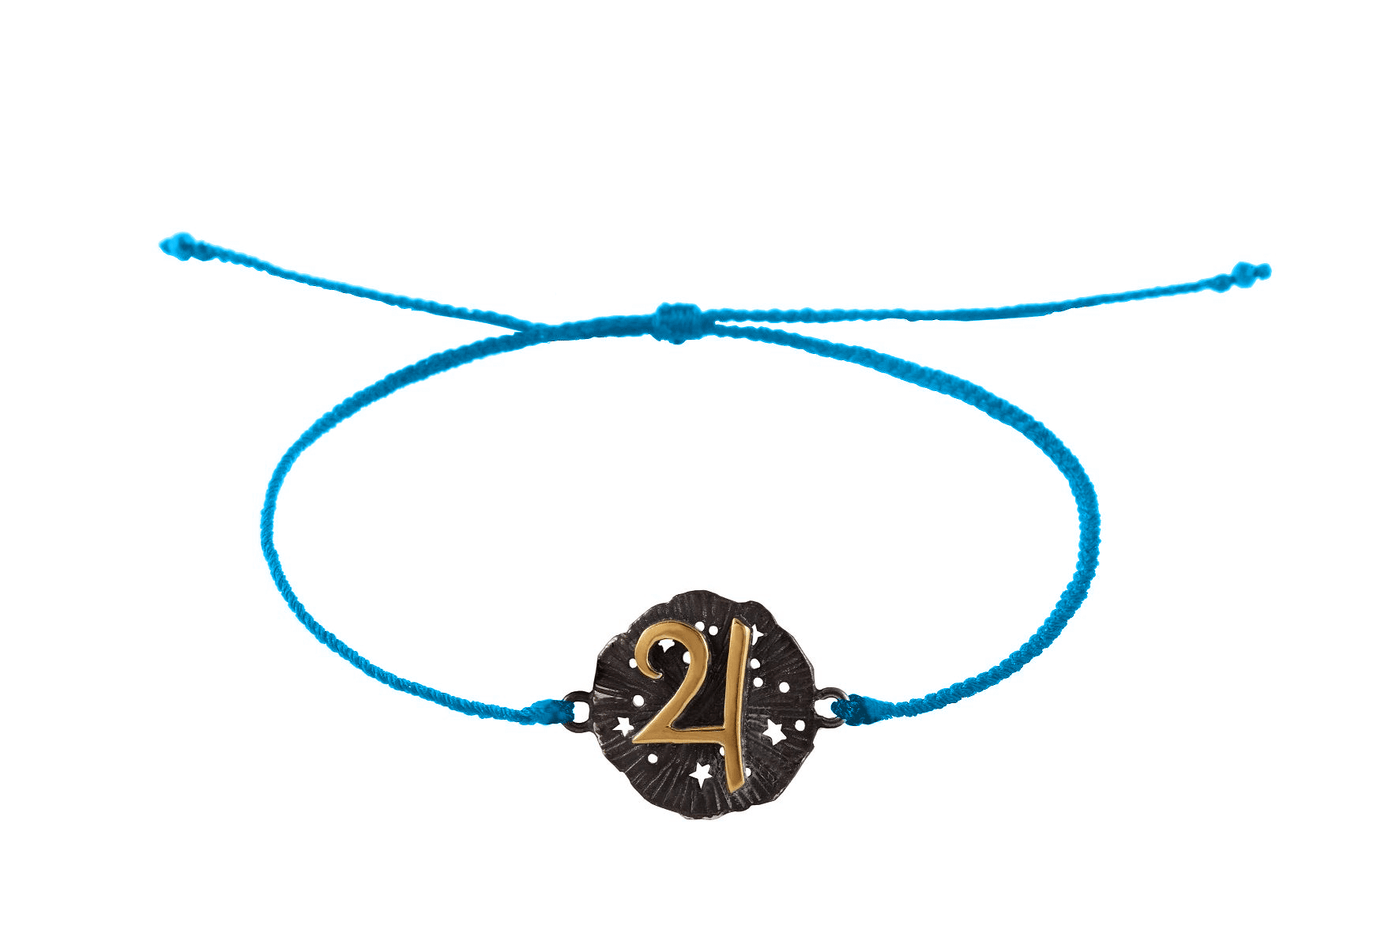 String bracelet with Jupiter medallion amulet. Gold plated and oxide